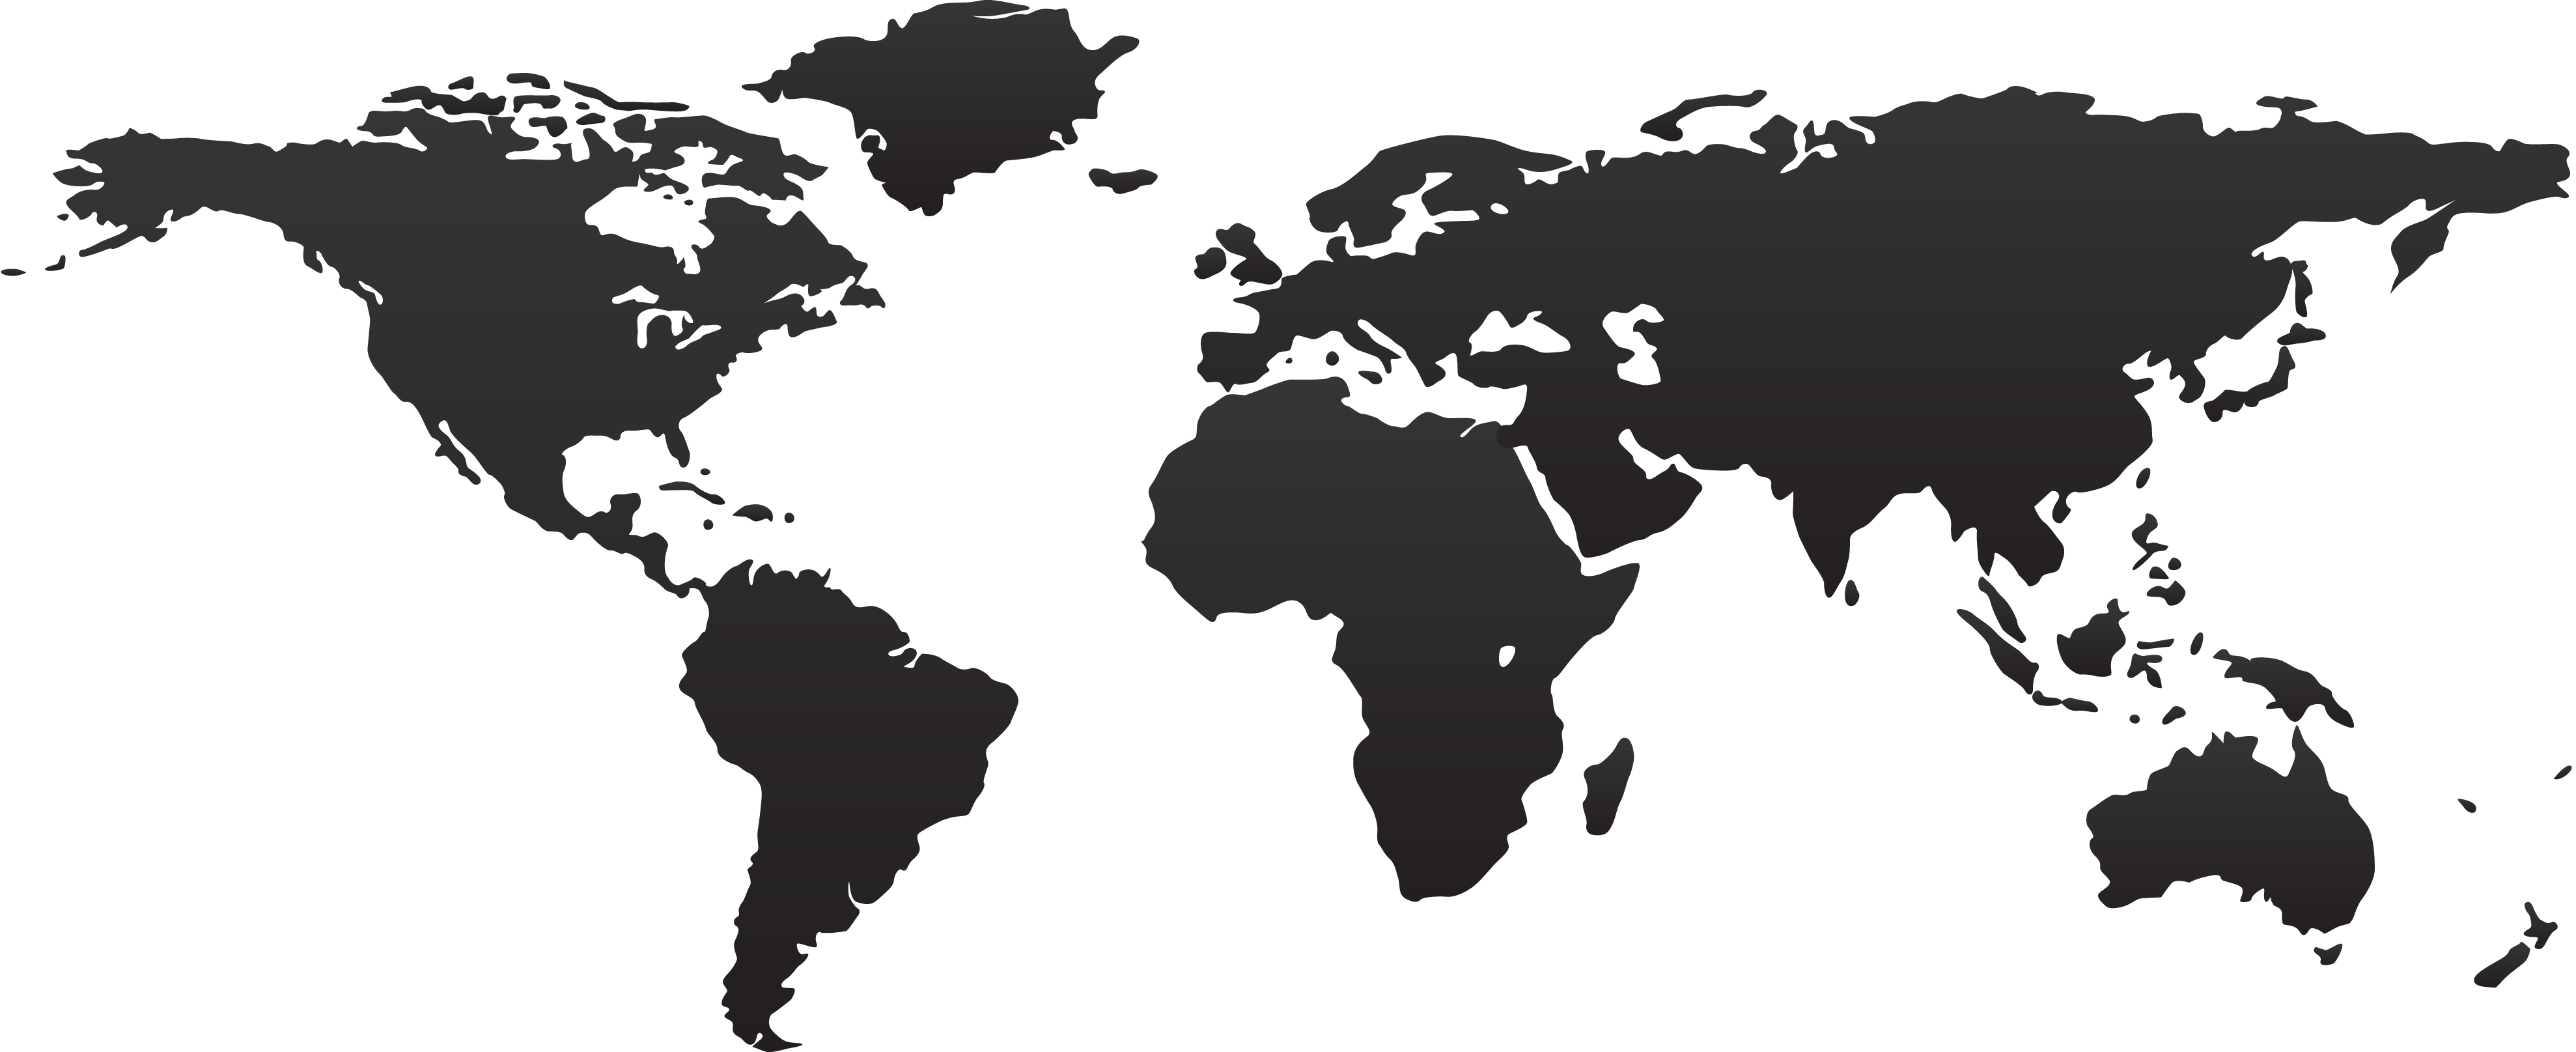 World Map Flat Png - Wayne Baisey